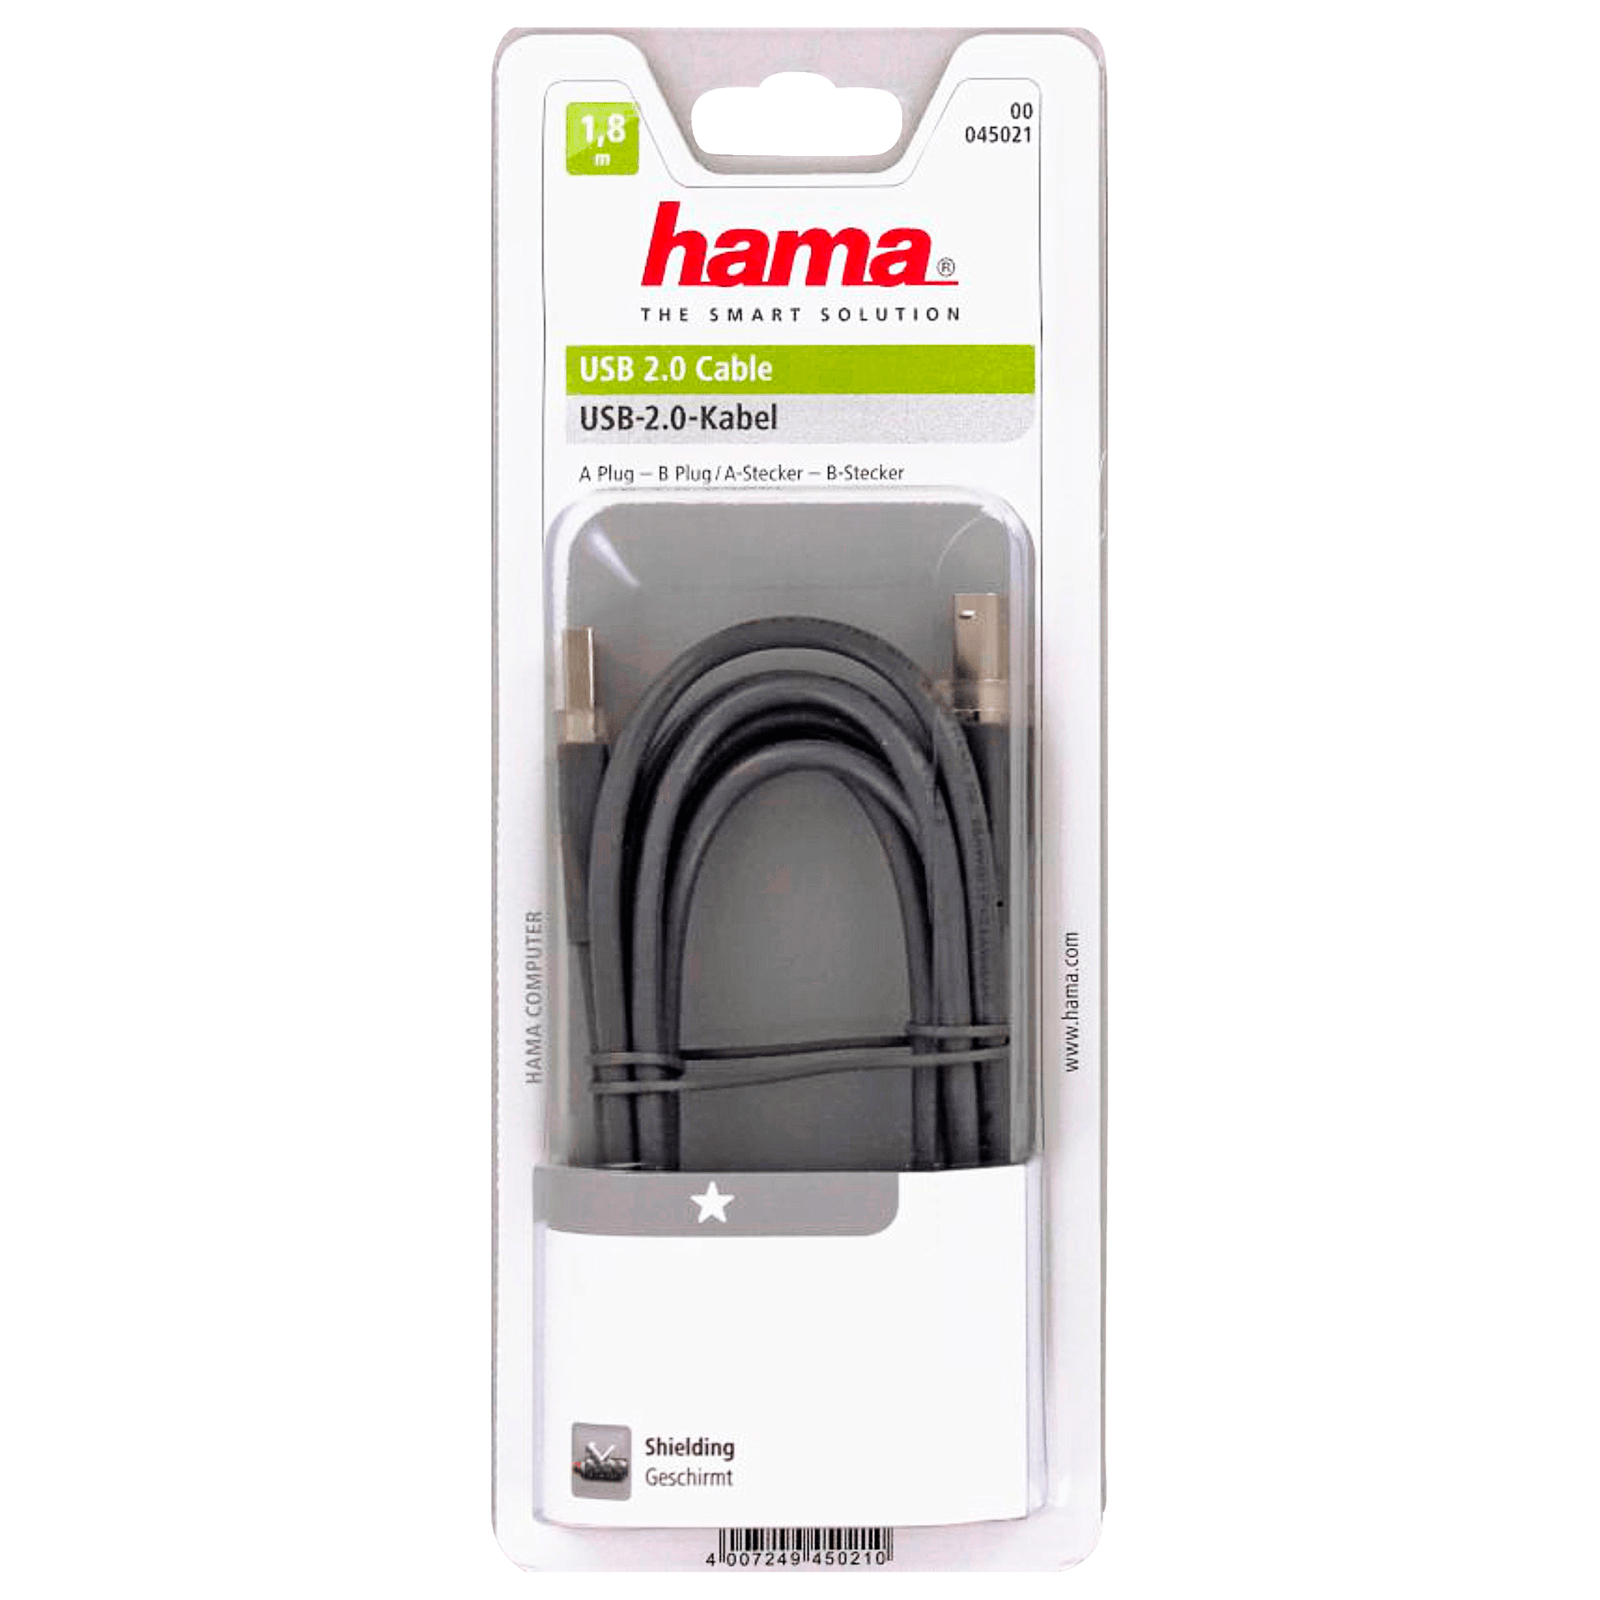 Hama USB-2.0-Kabel 1,80m grau bei REWE online bestellen!